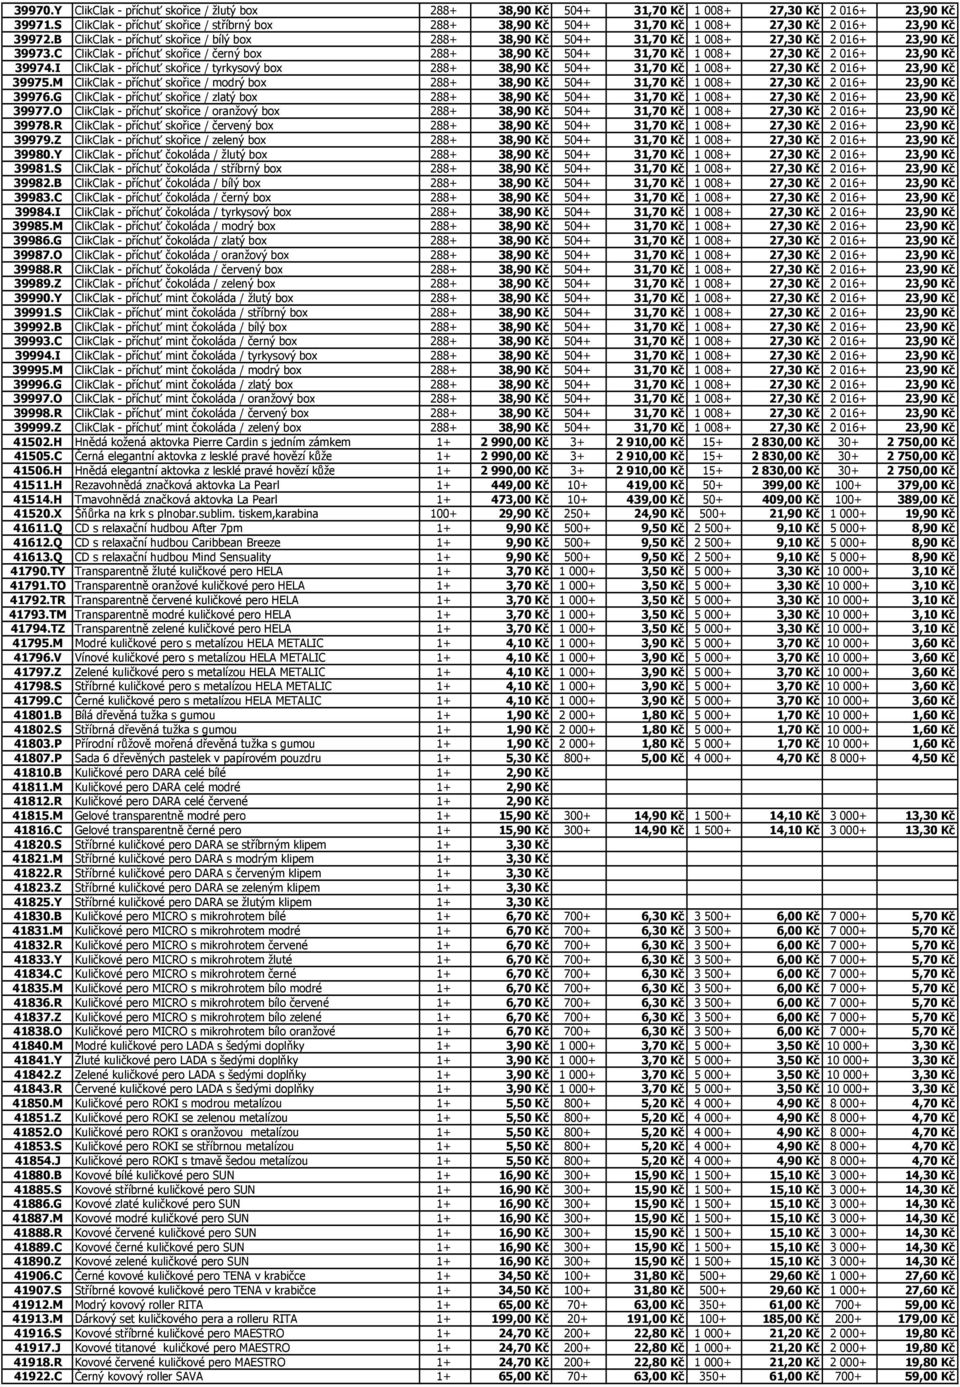 B ClikClak - příchuť skořice / bílý box 288+ 38,90 Kč 504+ 31,70 Kč 1 008+ 27,30 Kč 2 016+ 23,90 Kč 39973.